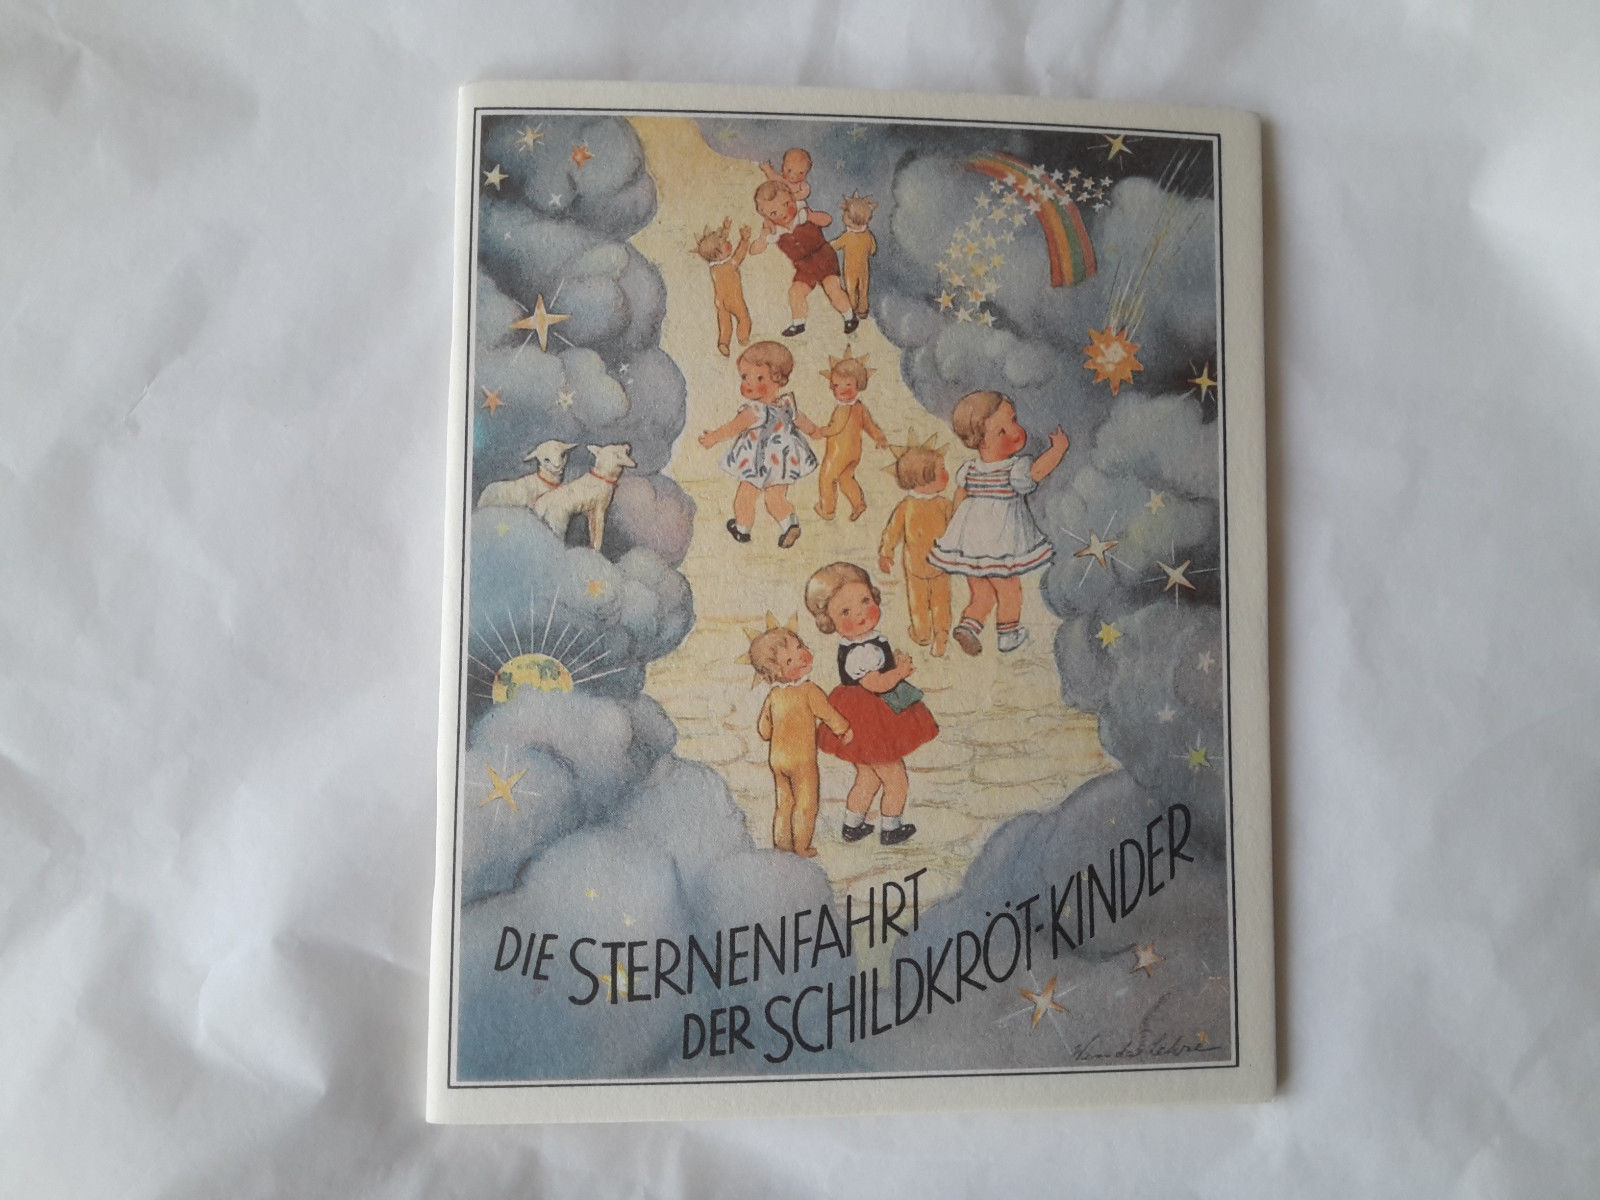 Selten altes  Kinderbuch   STERNENFAHRT der Schildkröt kinder Dachbodenfund 